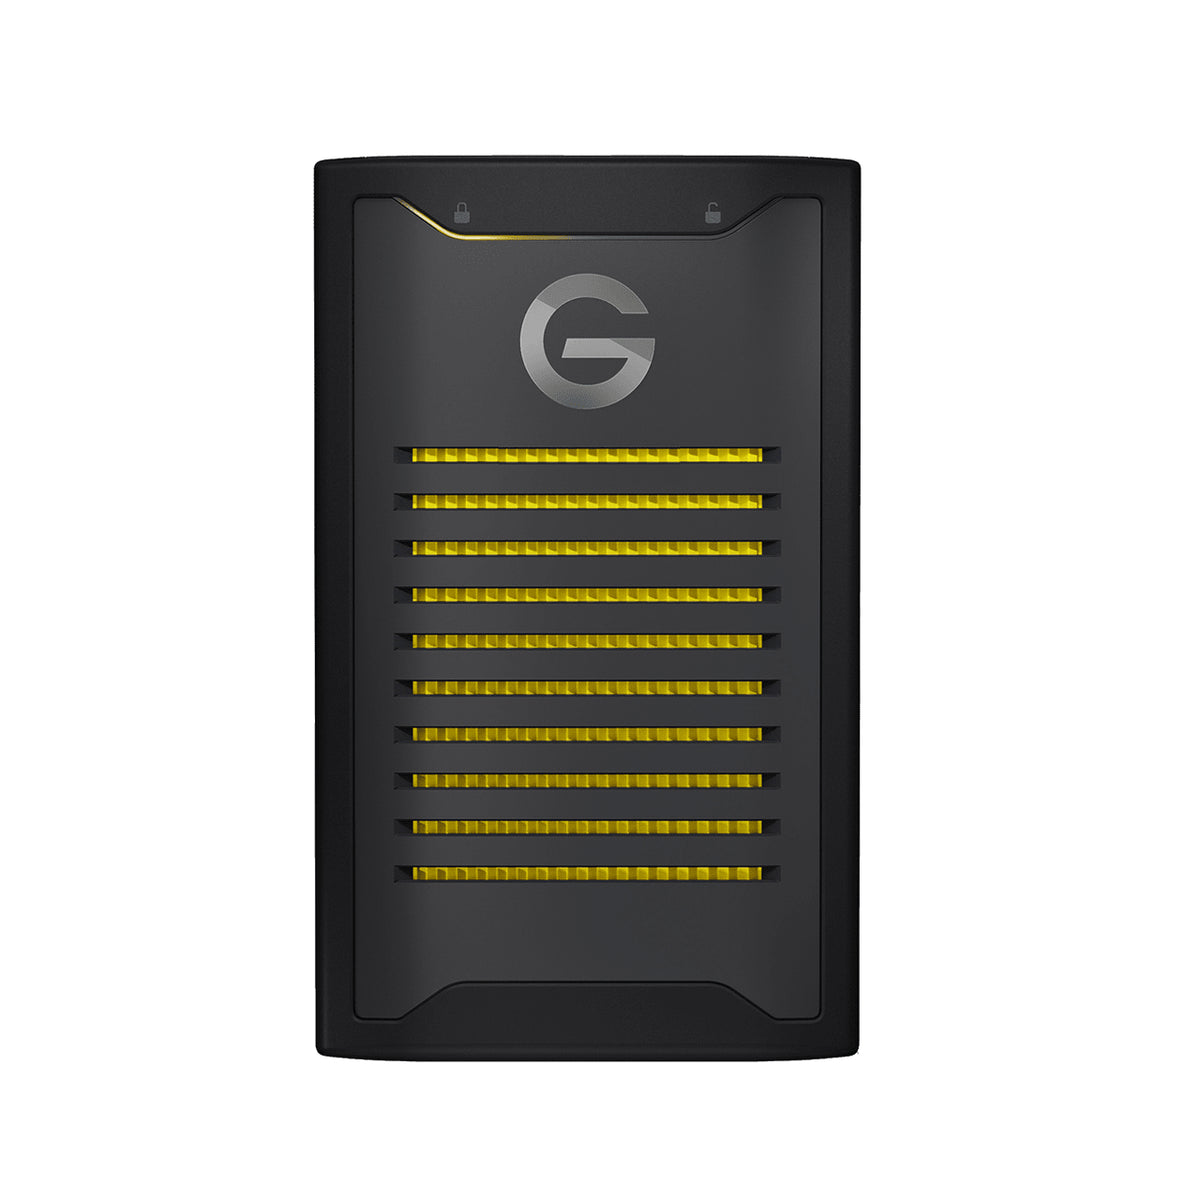 G-Technology ArmorLock - SSD - encrypted - 2 TB - external (portable) - USB 3.2 Gen 2 (USB C connector) - 256-bit AES-XTS